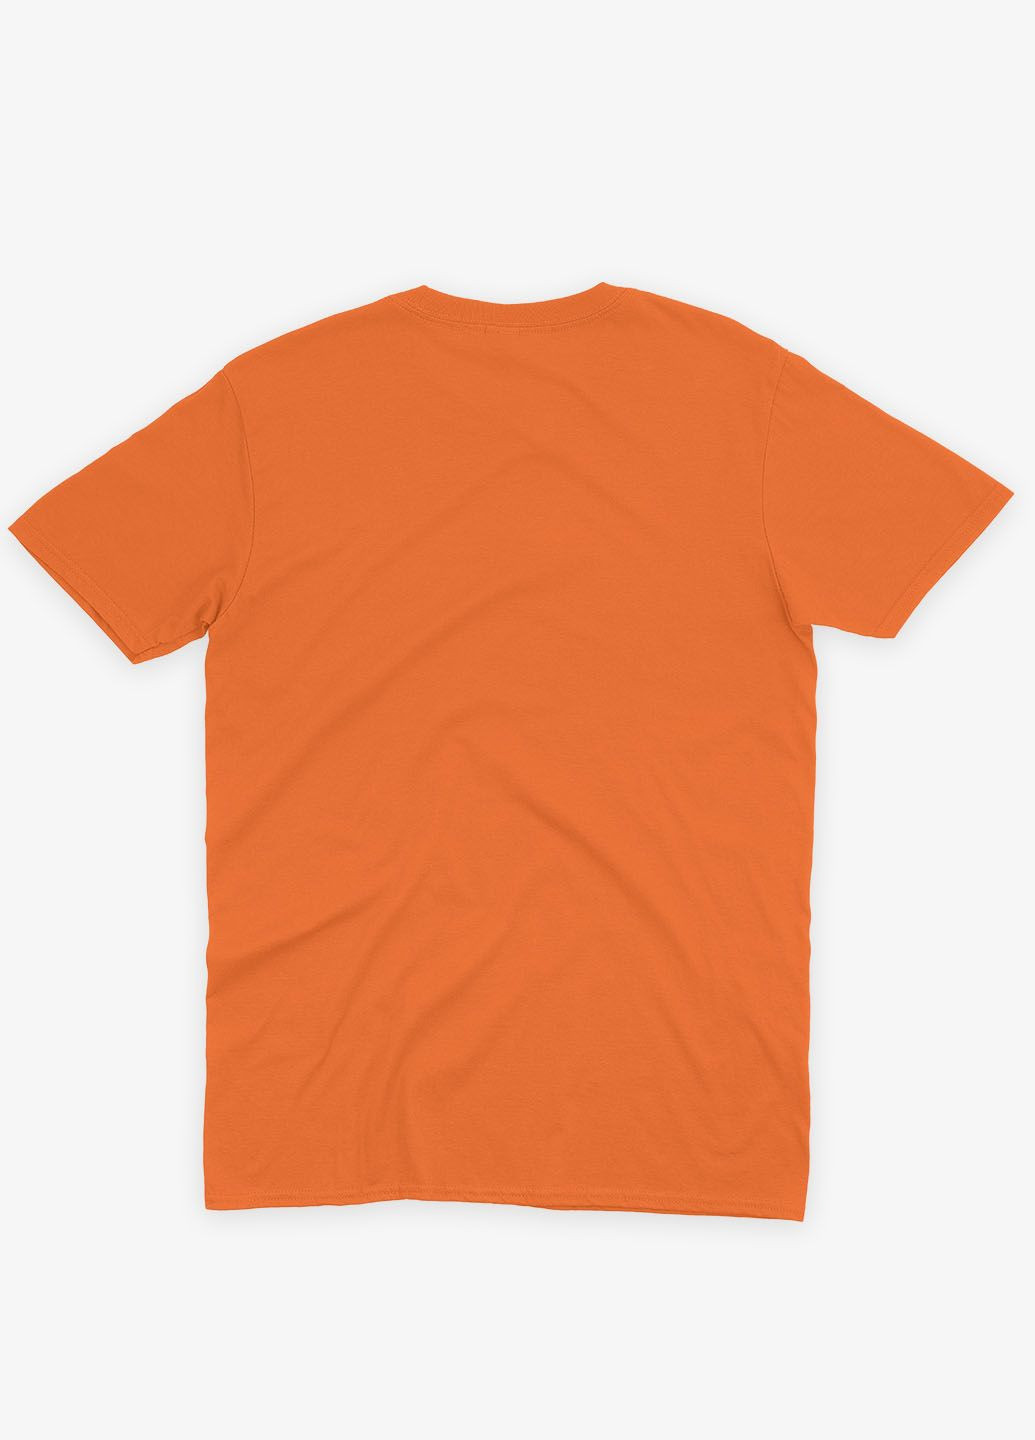 Оранжевая демисезонная футболка для девочки с принтом супергероев - часовые галактики (ts001-1-ora-006-017-001-g) Modno